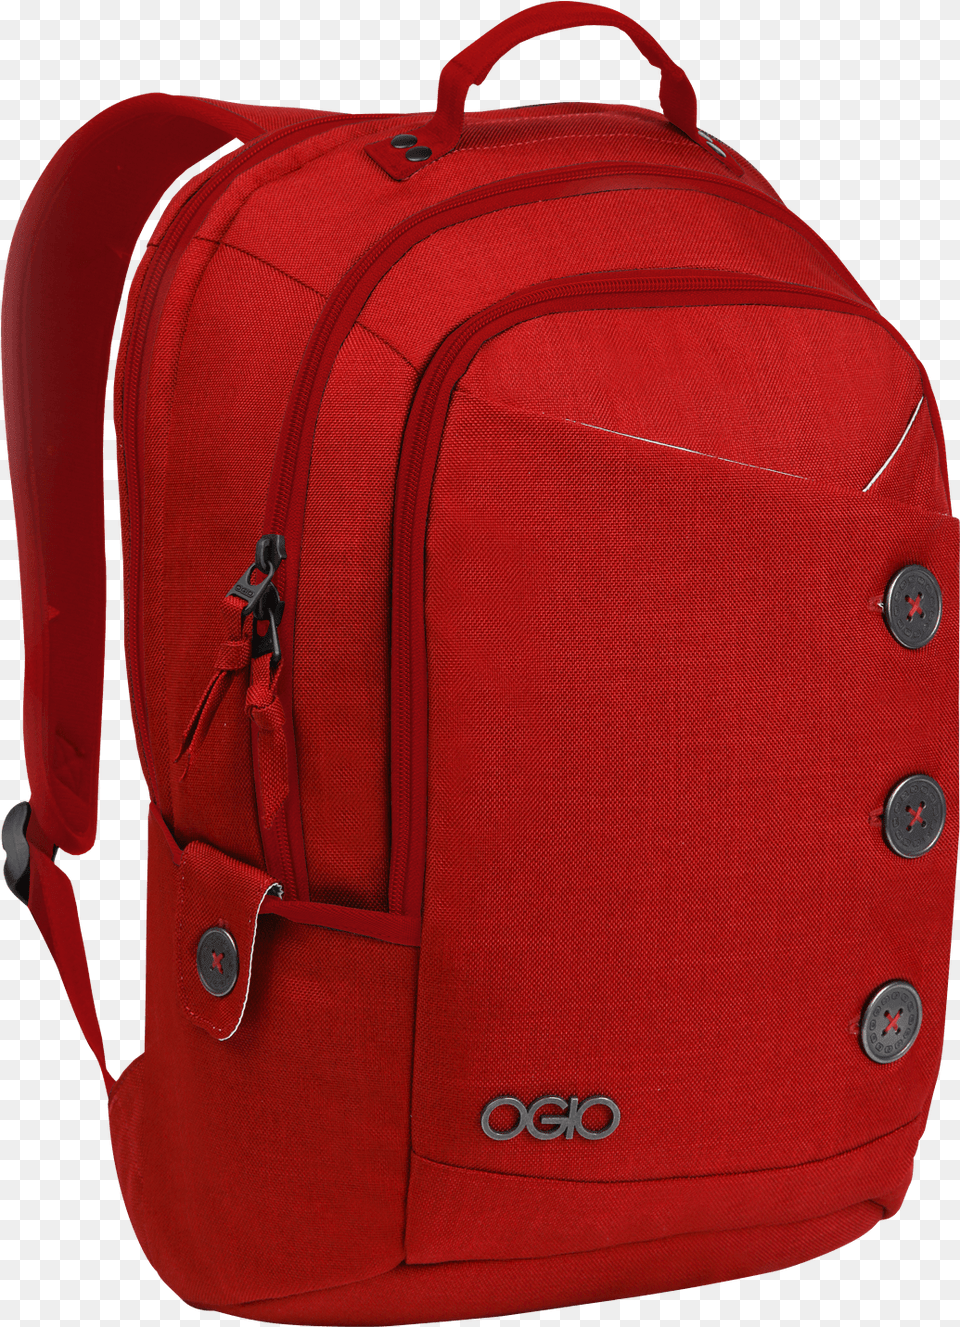 Ogio Red Backpack Red Backpack, Bag Free Transparent Png